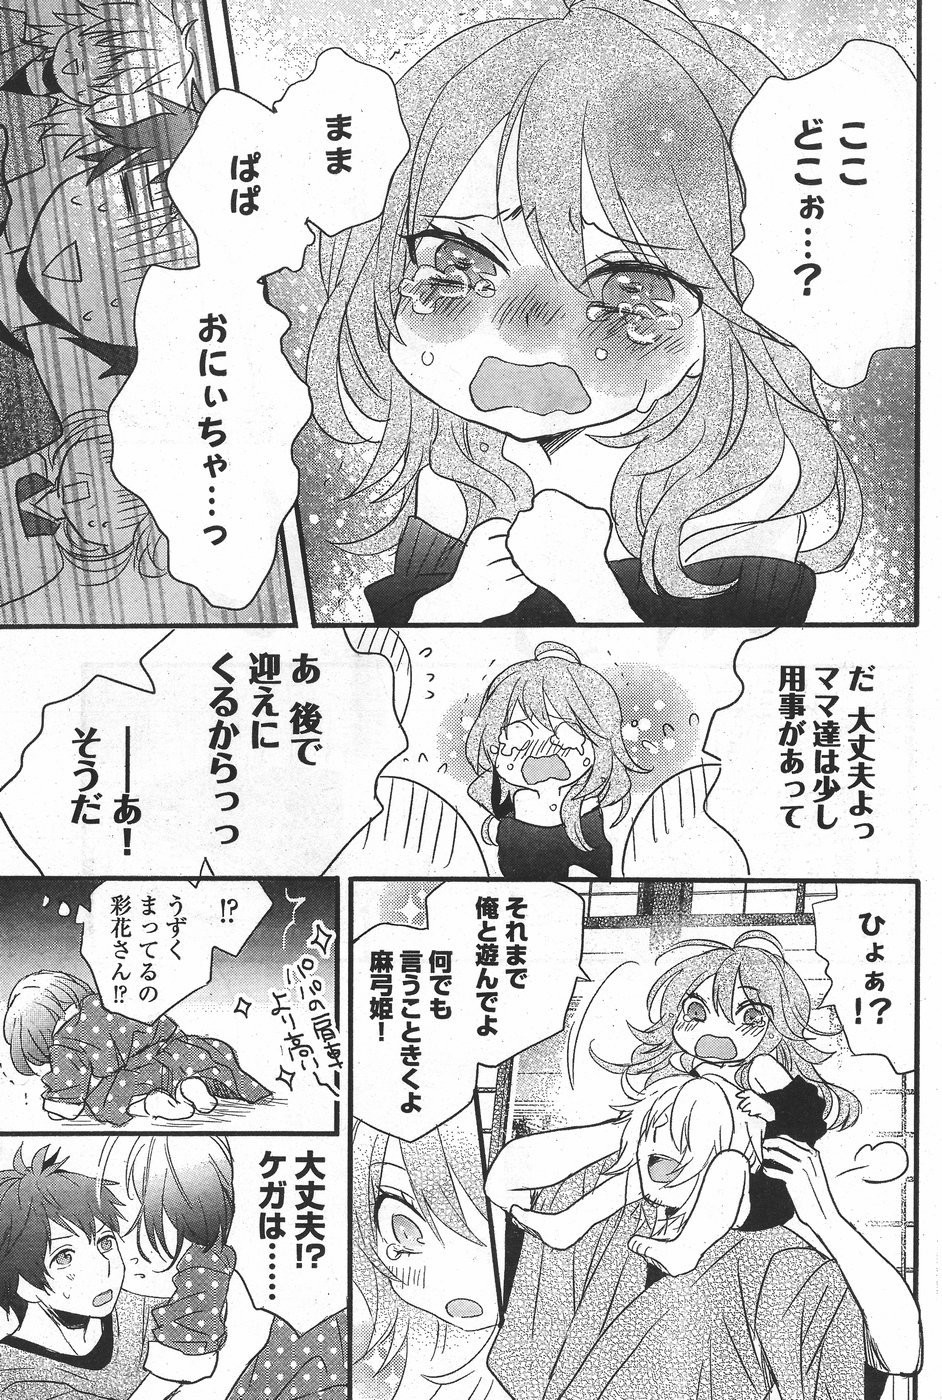 Bokura wa Minna Kawaisou - Chapter 71.5 - Page 7